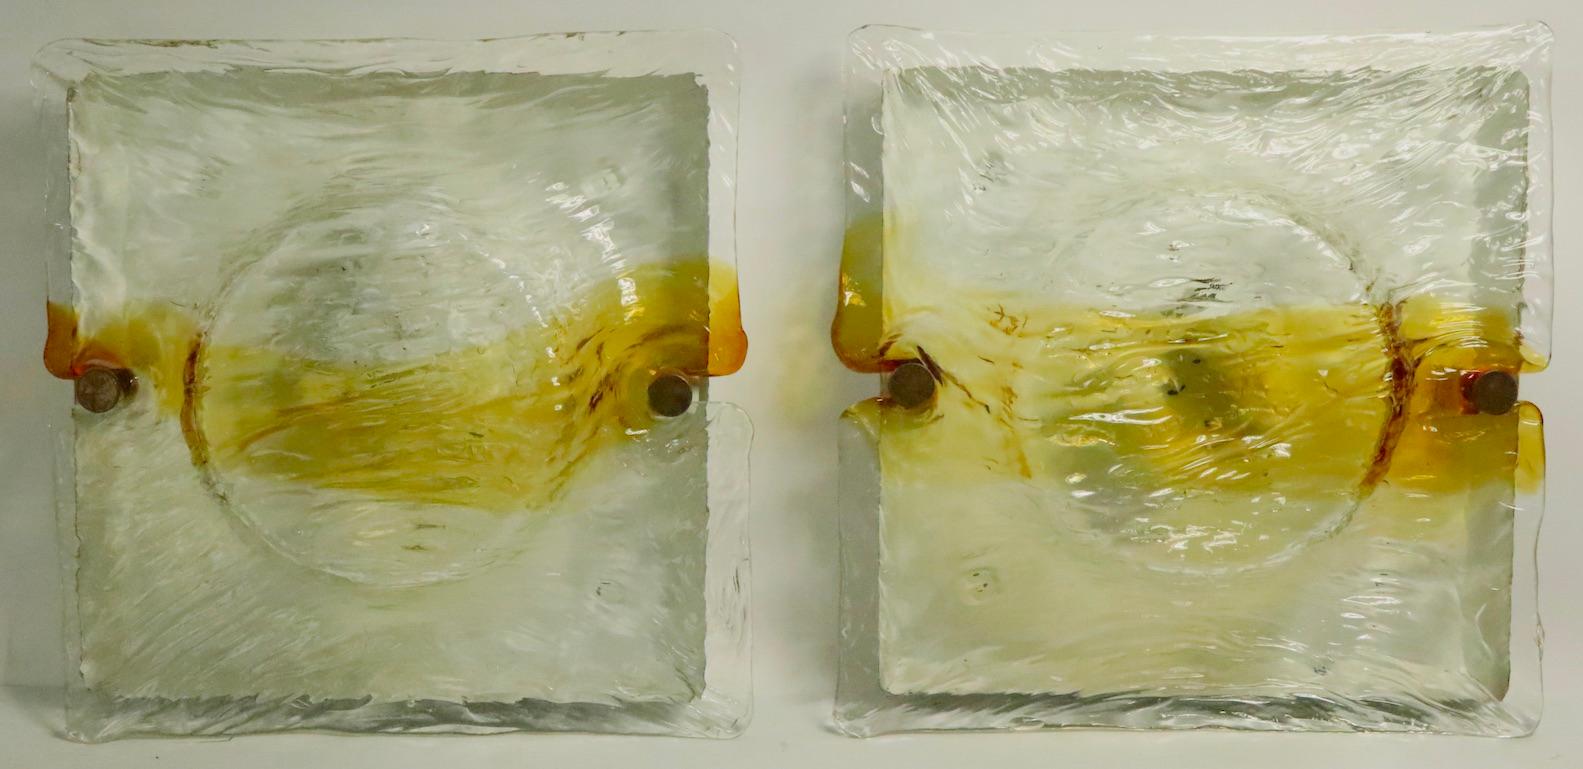 Spectaculaire paire d'appliques de Murano avec des abat-jour en verre formé et texturé, montés sur des plaques de métal. Chaque plaque arrière comporte deux douilles qui acceptent des ampoules à vis de taille standard, toutes deux marquées Made in